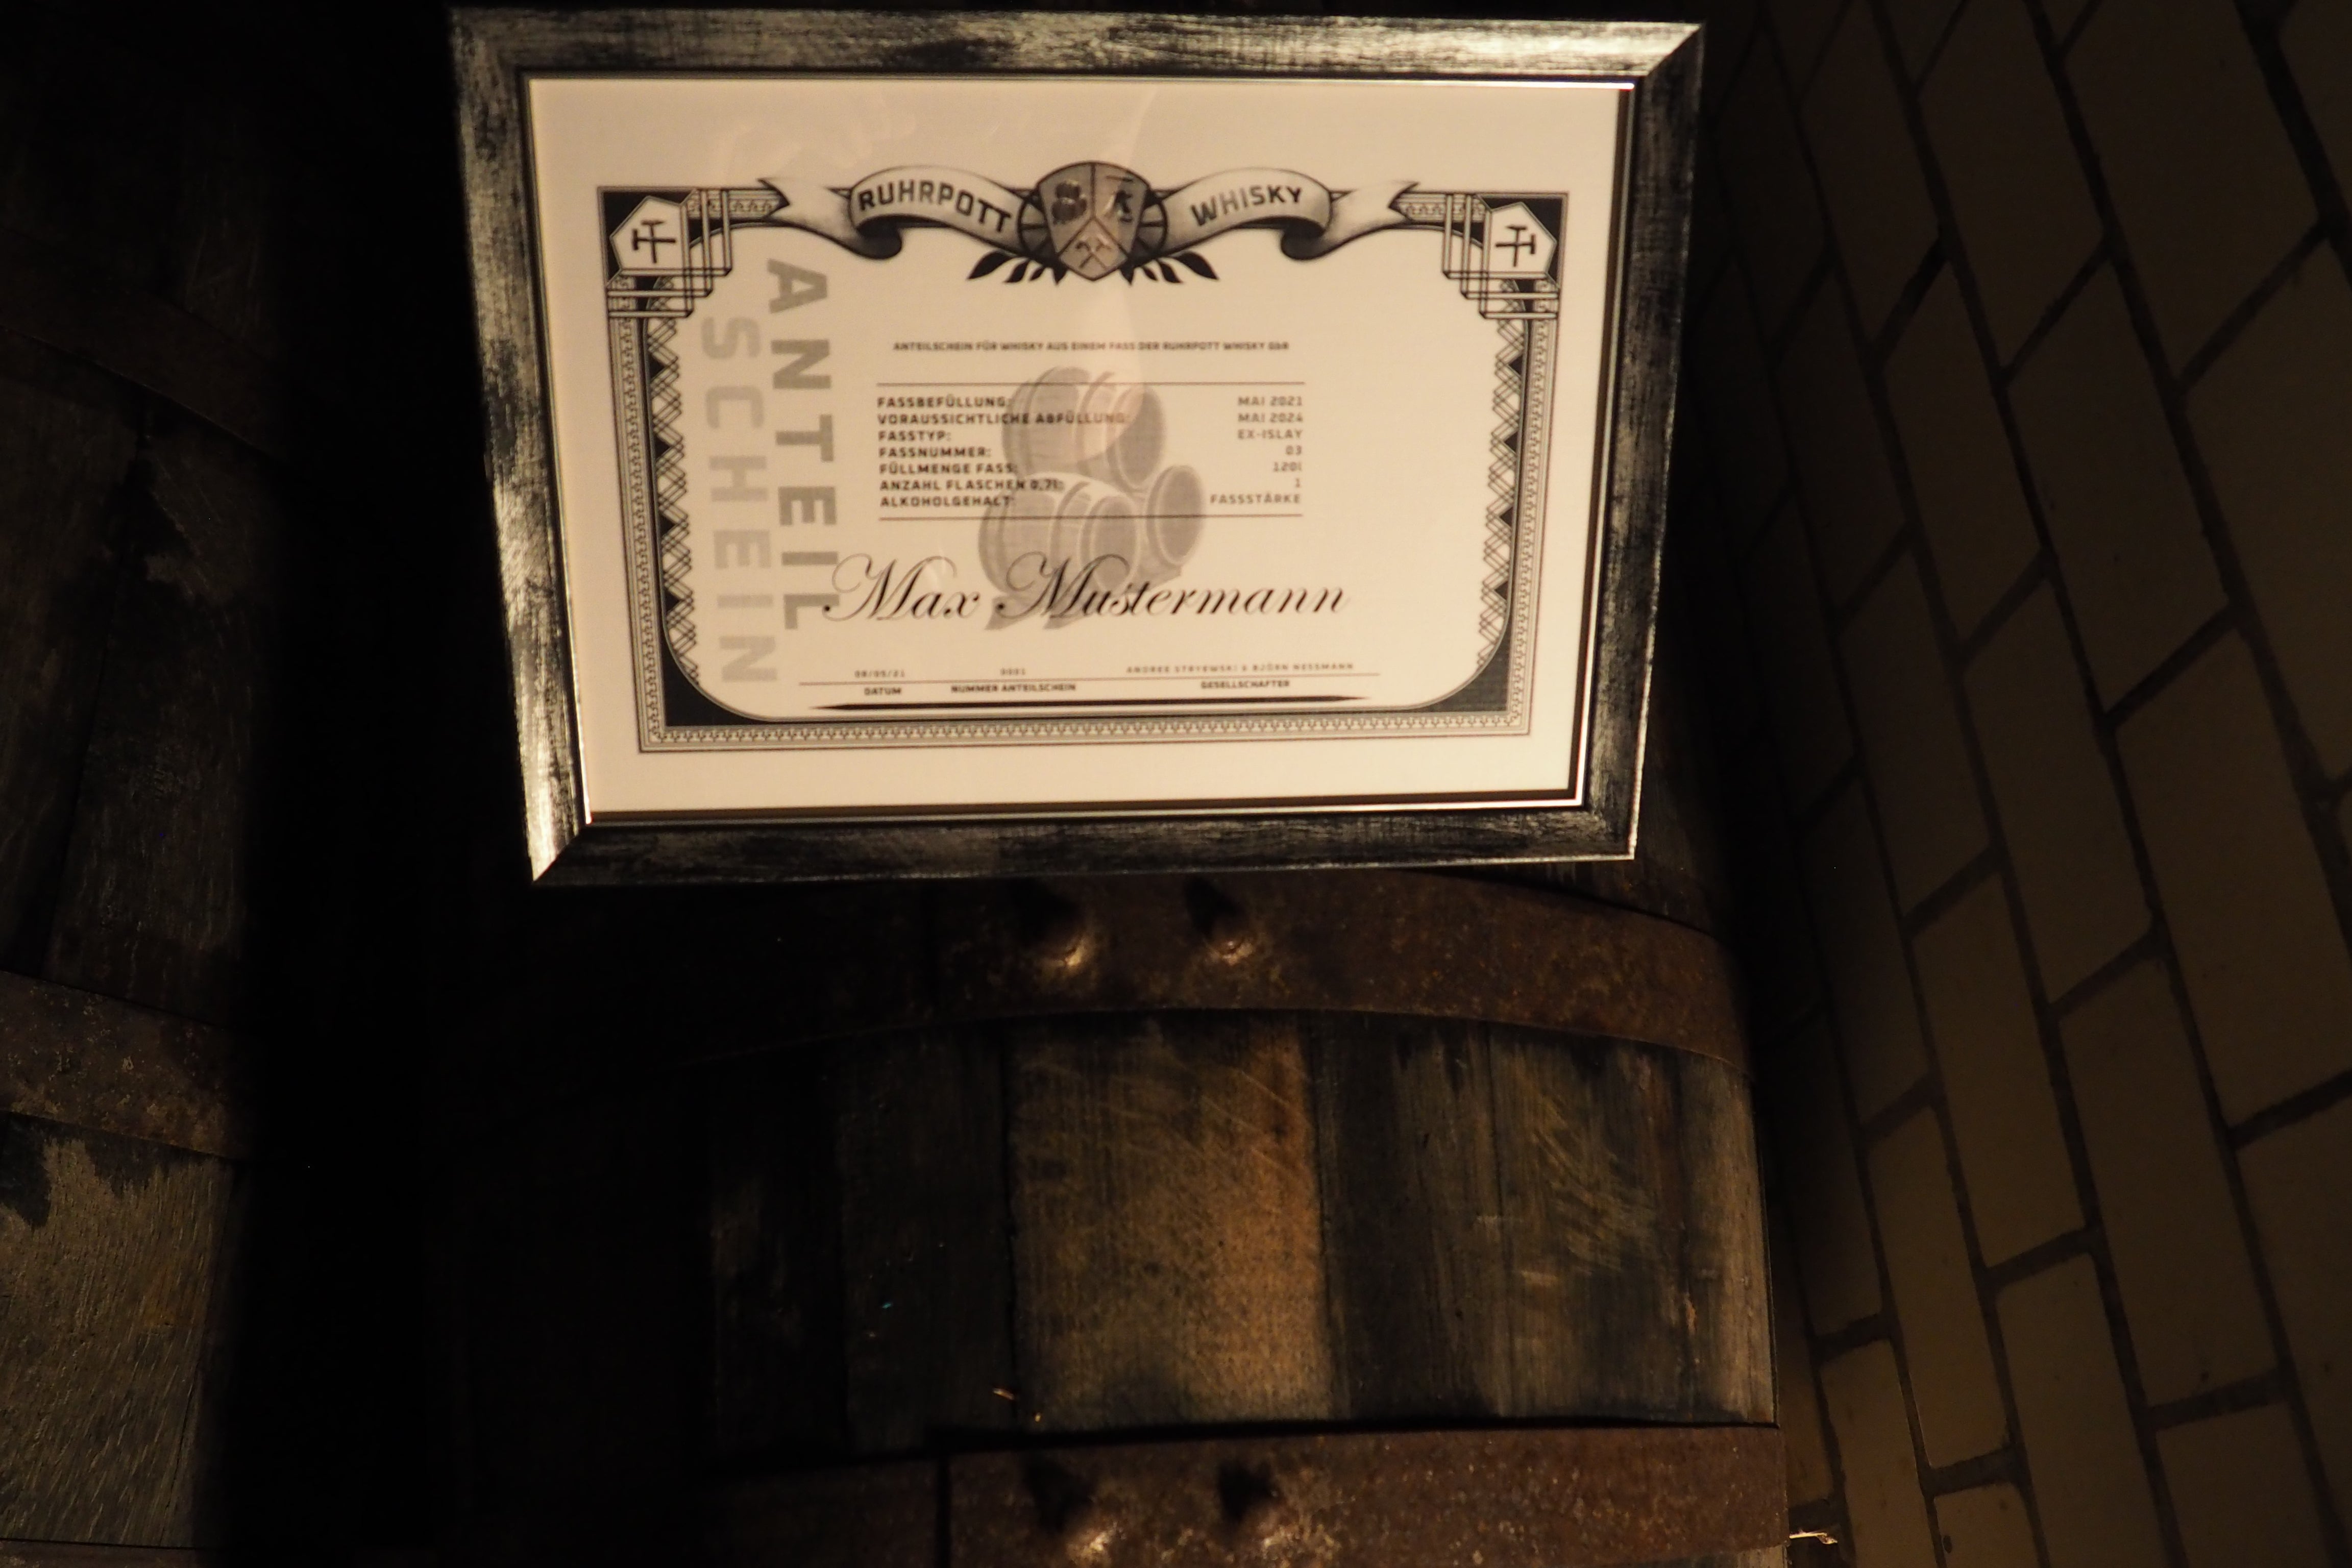 Ruhrpott Whisky - Bild eines Anteilscheins für den Whisky "Maschinenhalle" auf einem Ex-Islay Fass in denen der Whisky lagert. Eine edele Spirituose, die ein perfektes Geschenk für alle Whiskyliebhaber ist!